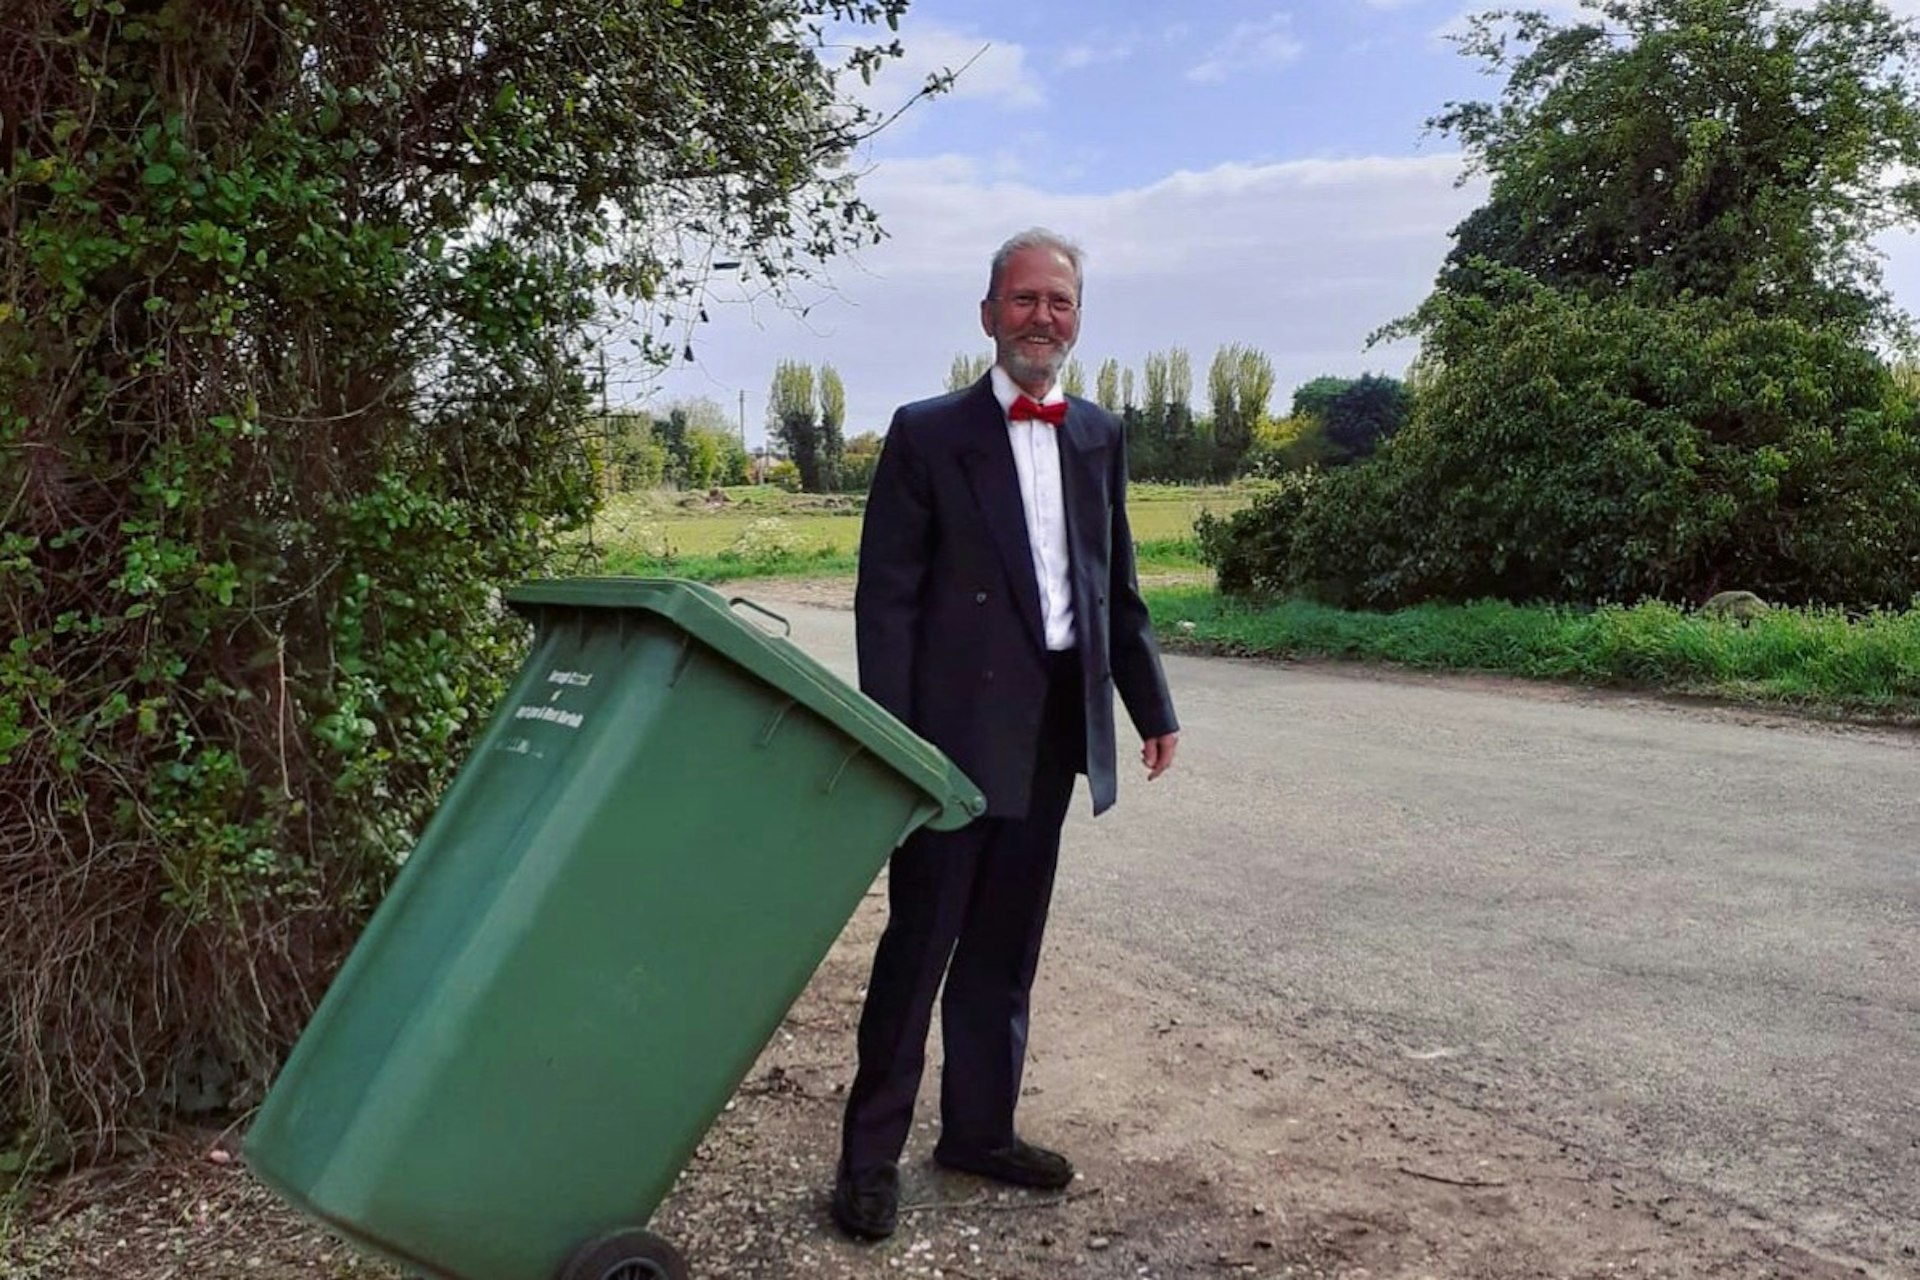 A man in a tuxedo taking out the bin